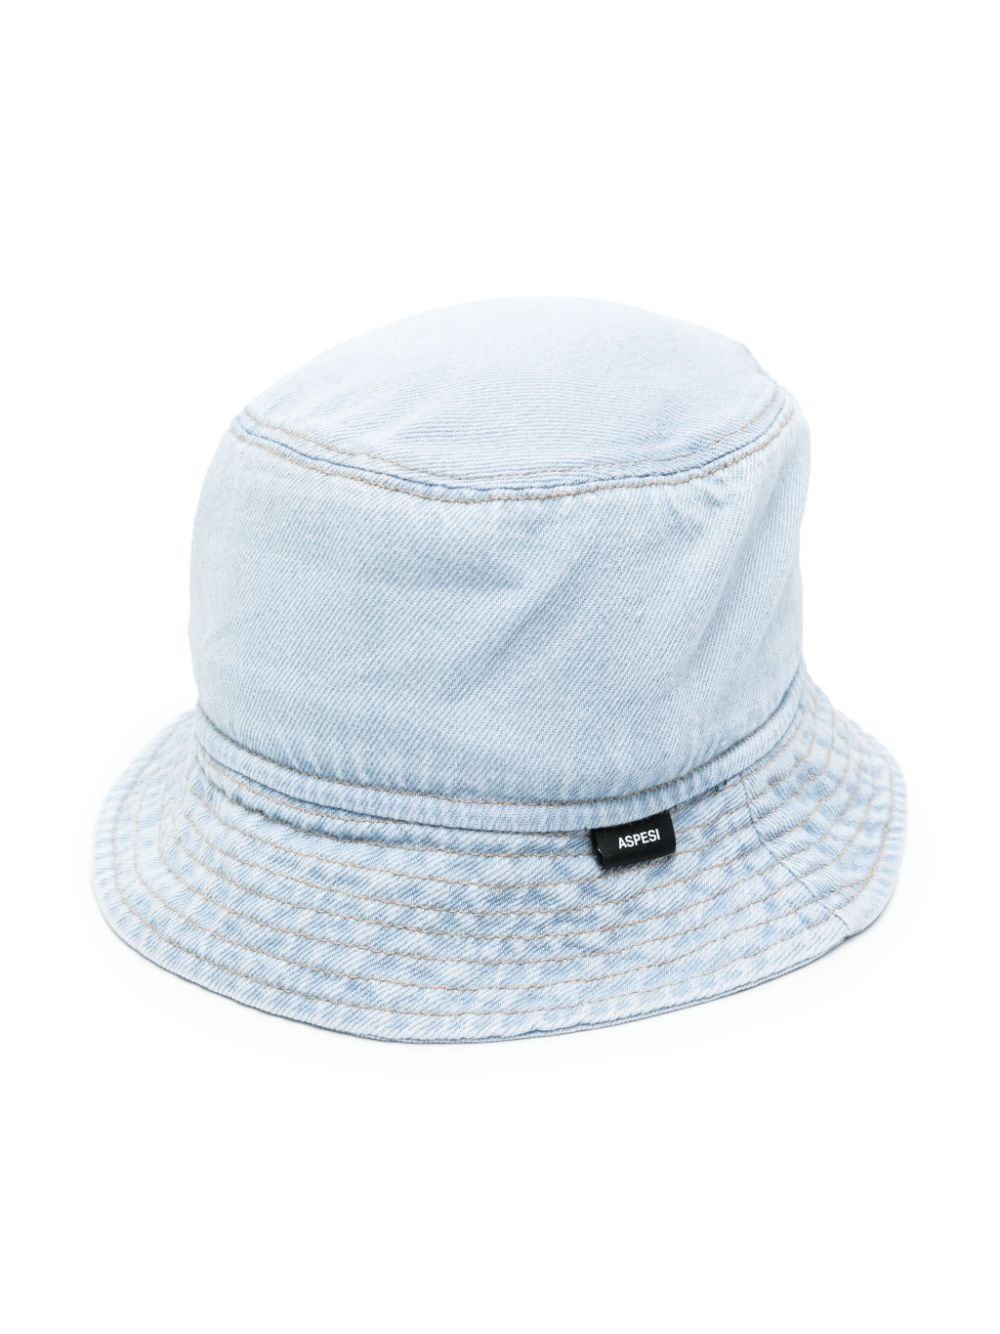 Aspesi Kids denim bucket hat - Blue von Aspesi Kids